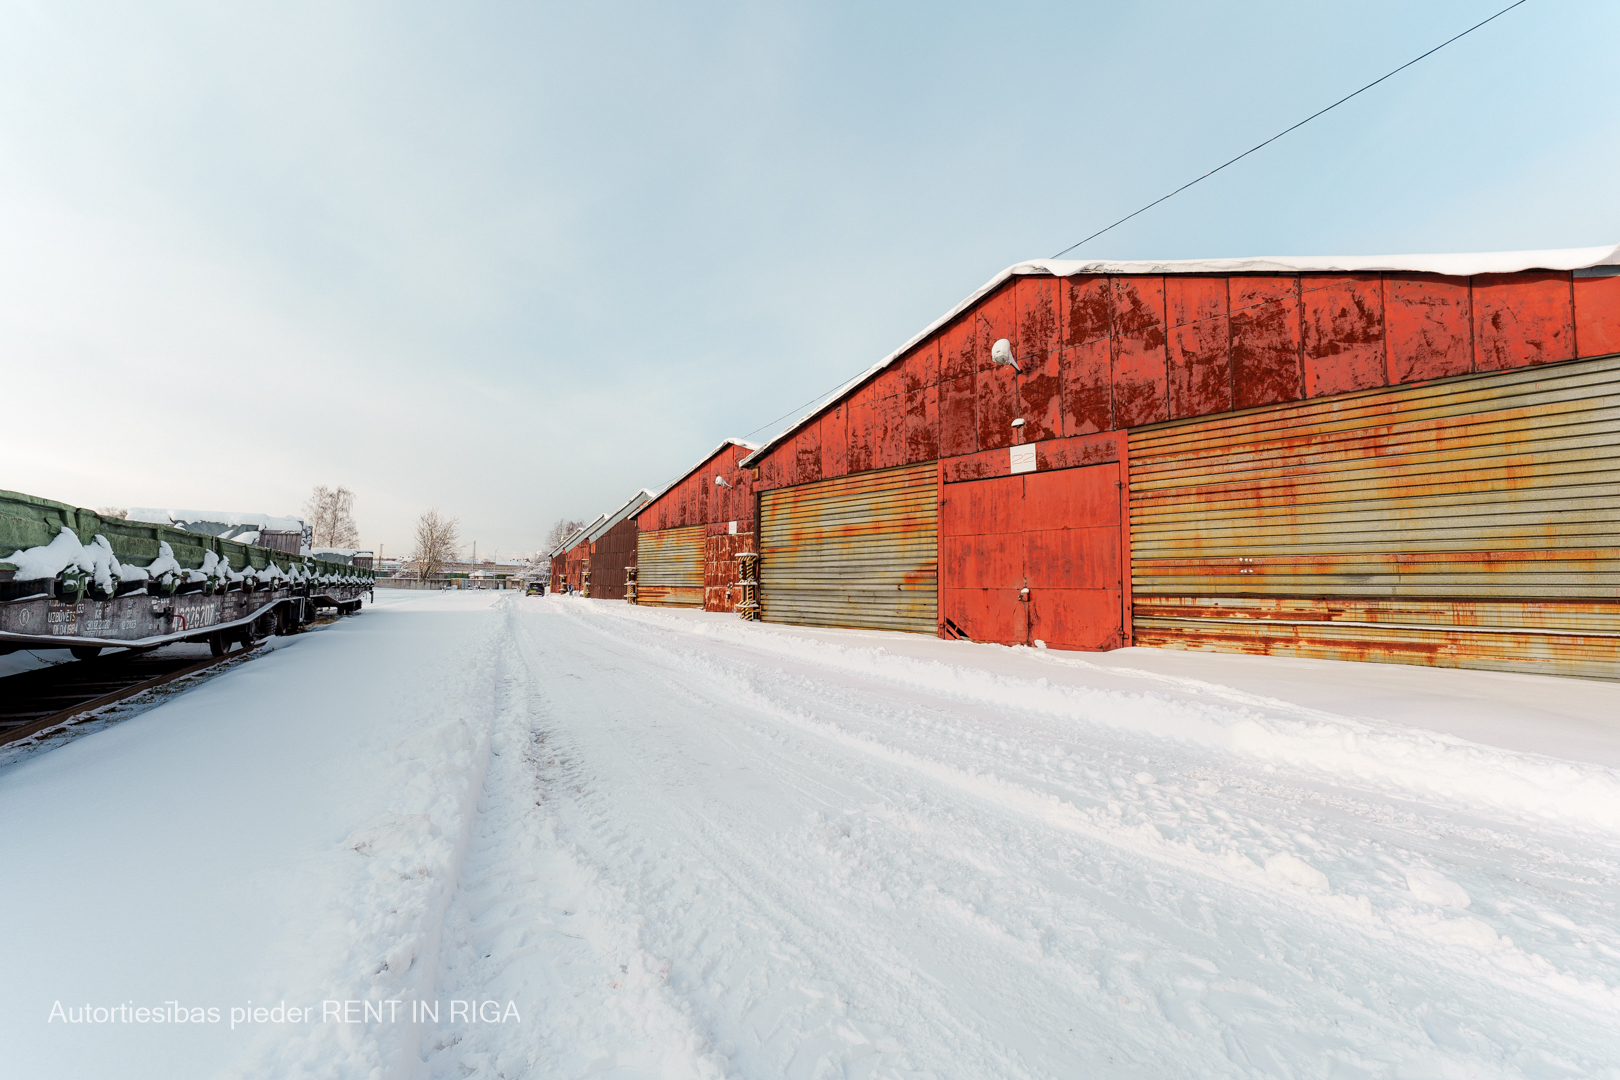 Warehouse for rent, Braslas street - Image 1